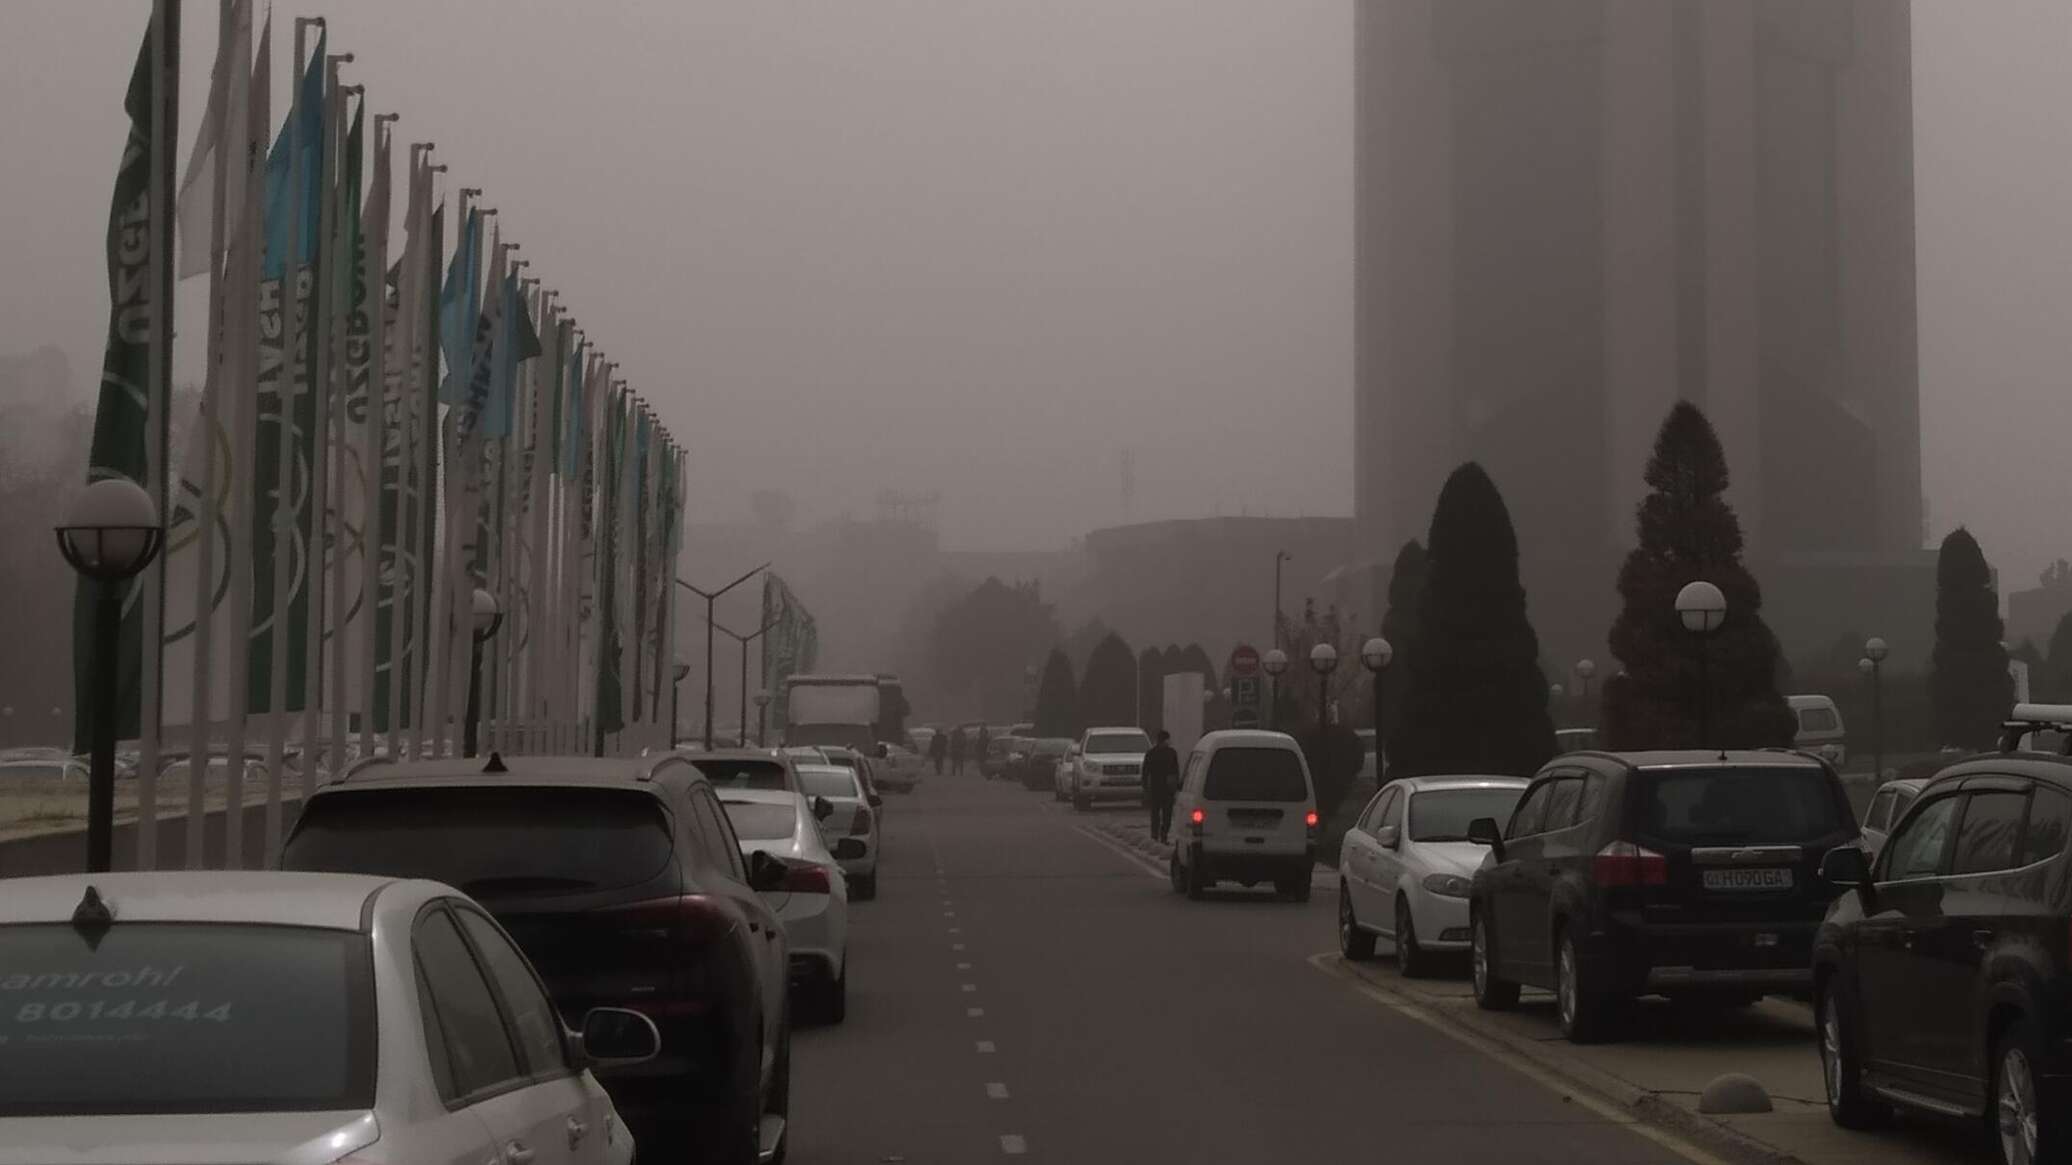 Жители Ташкента ежегодно косвенно выкуривают по 500 сигарет из-за плохого качества воздуха